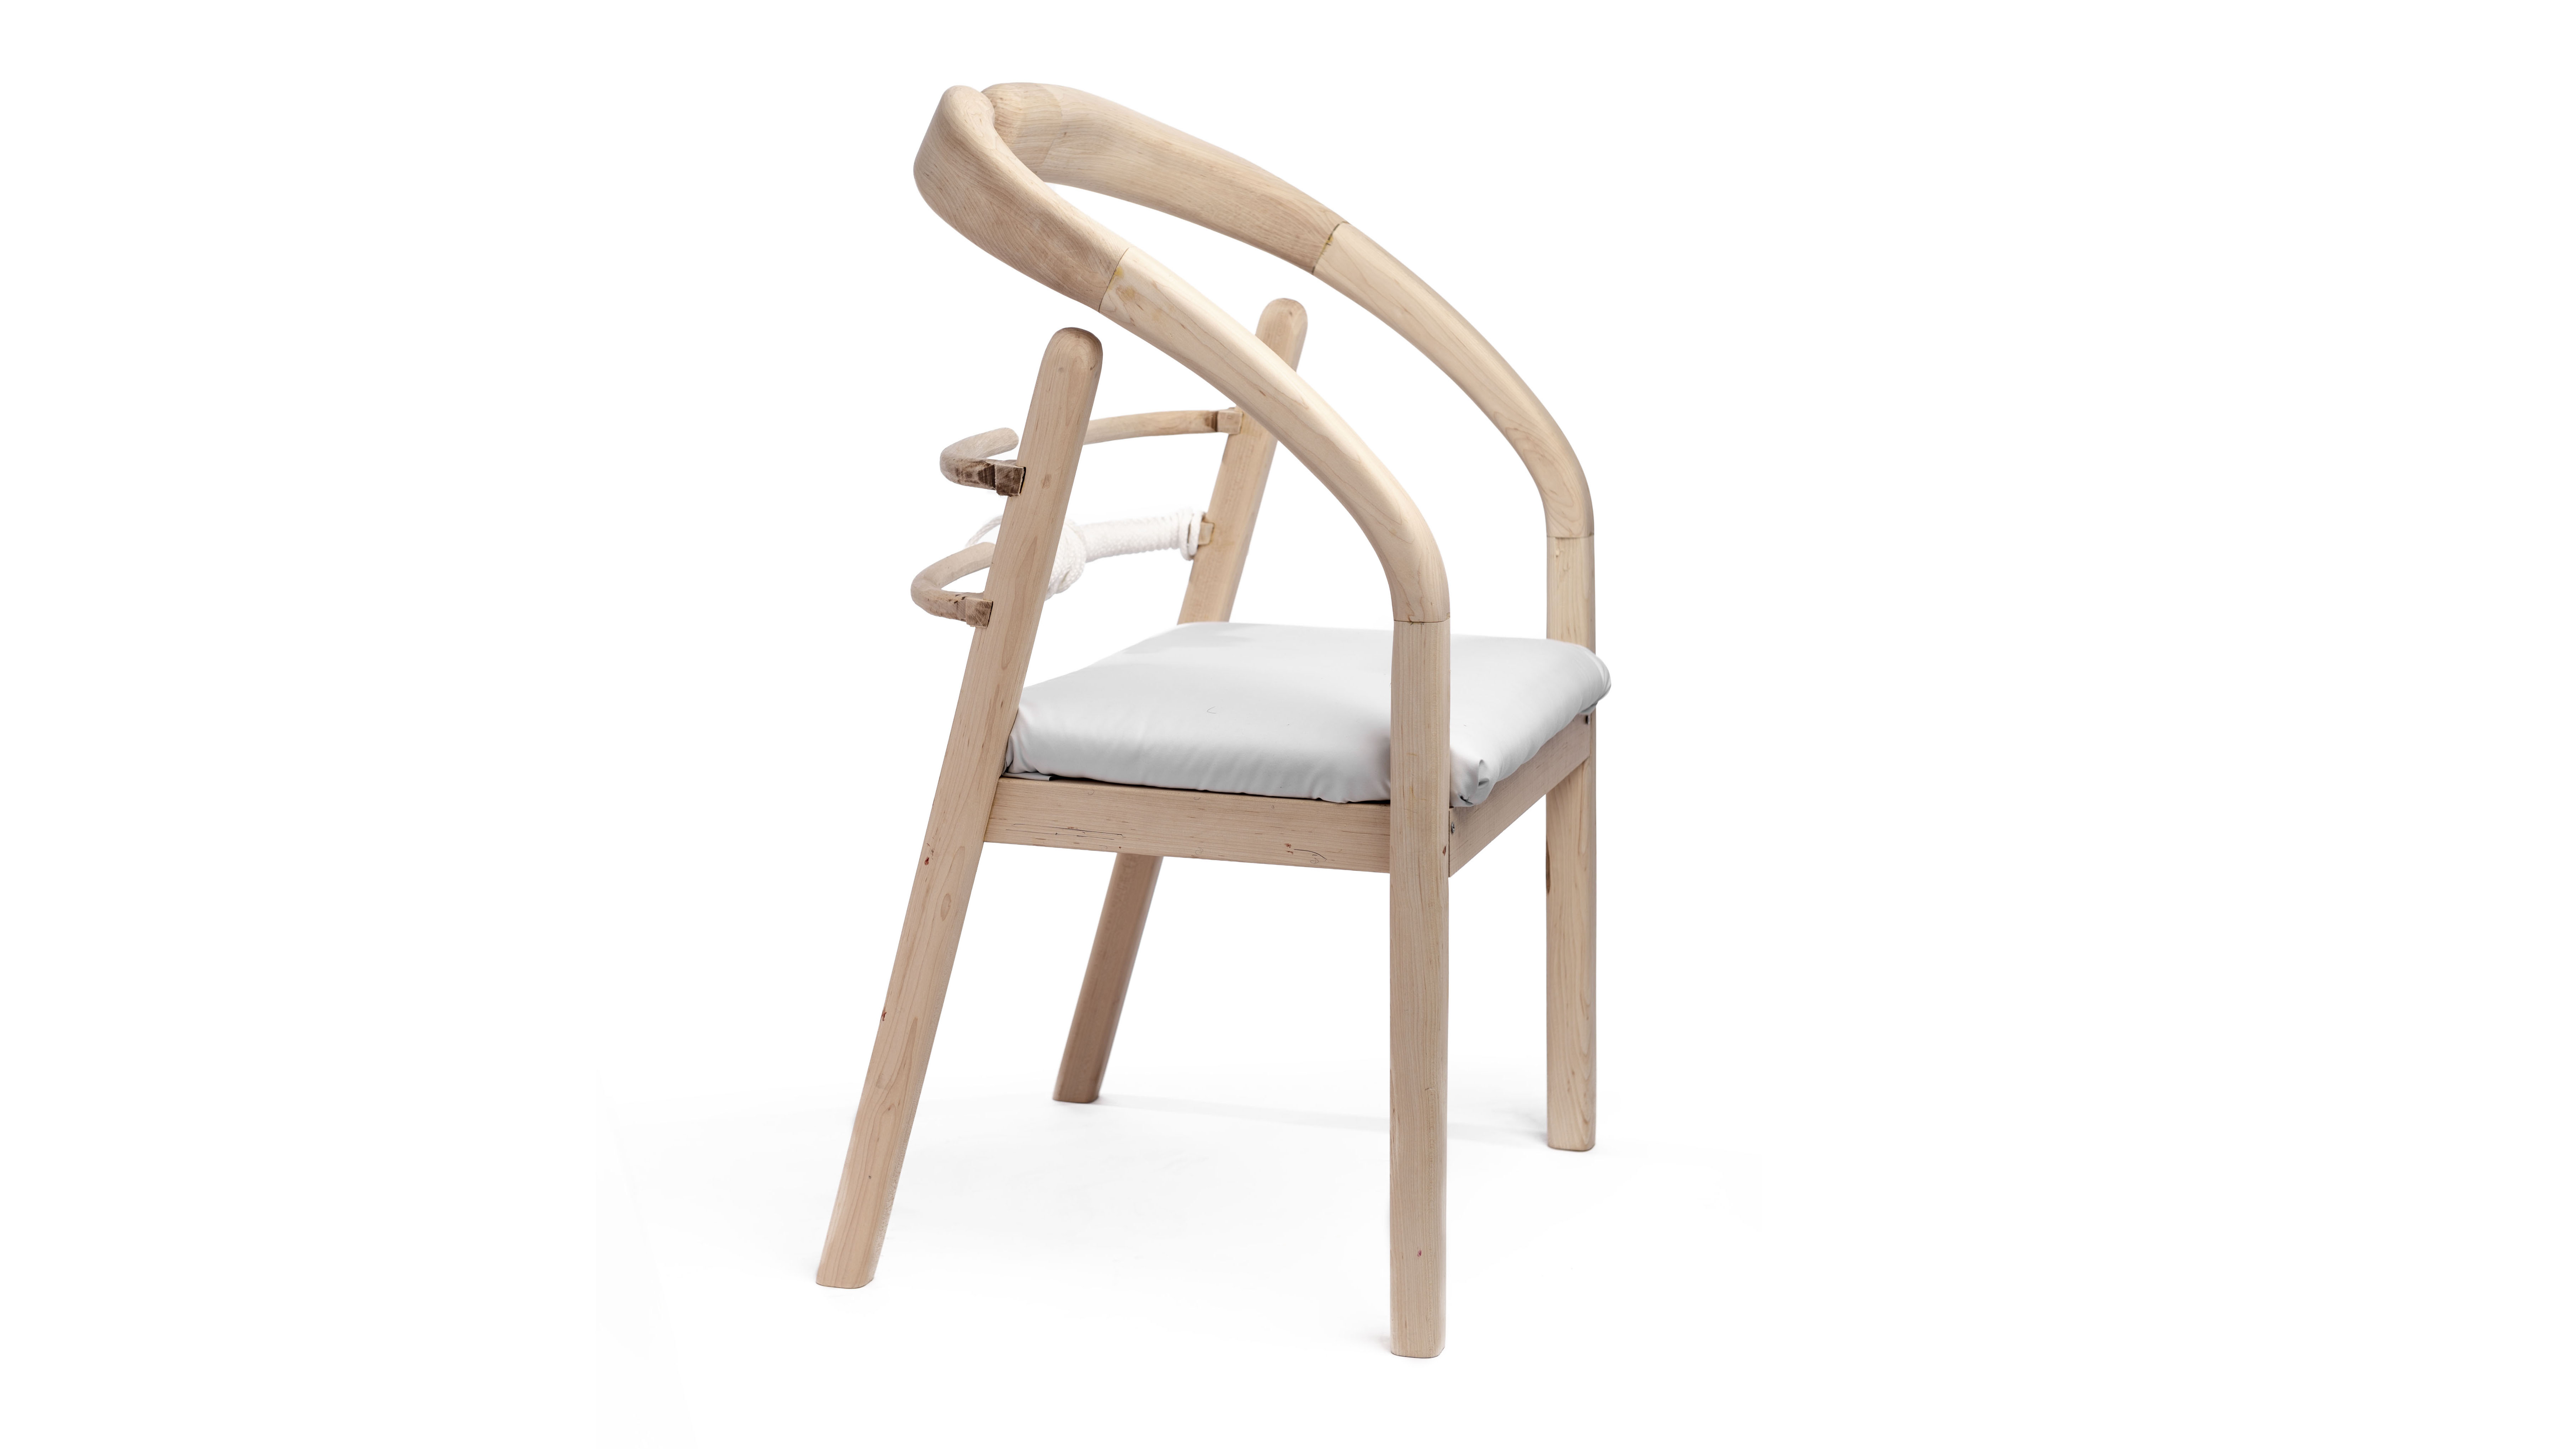 A massage chair design